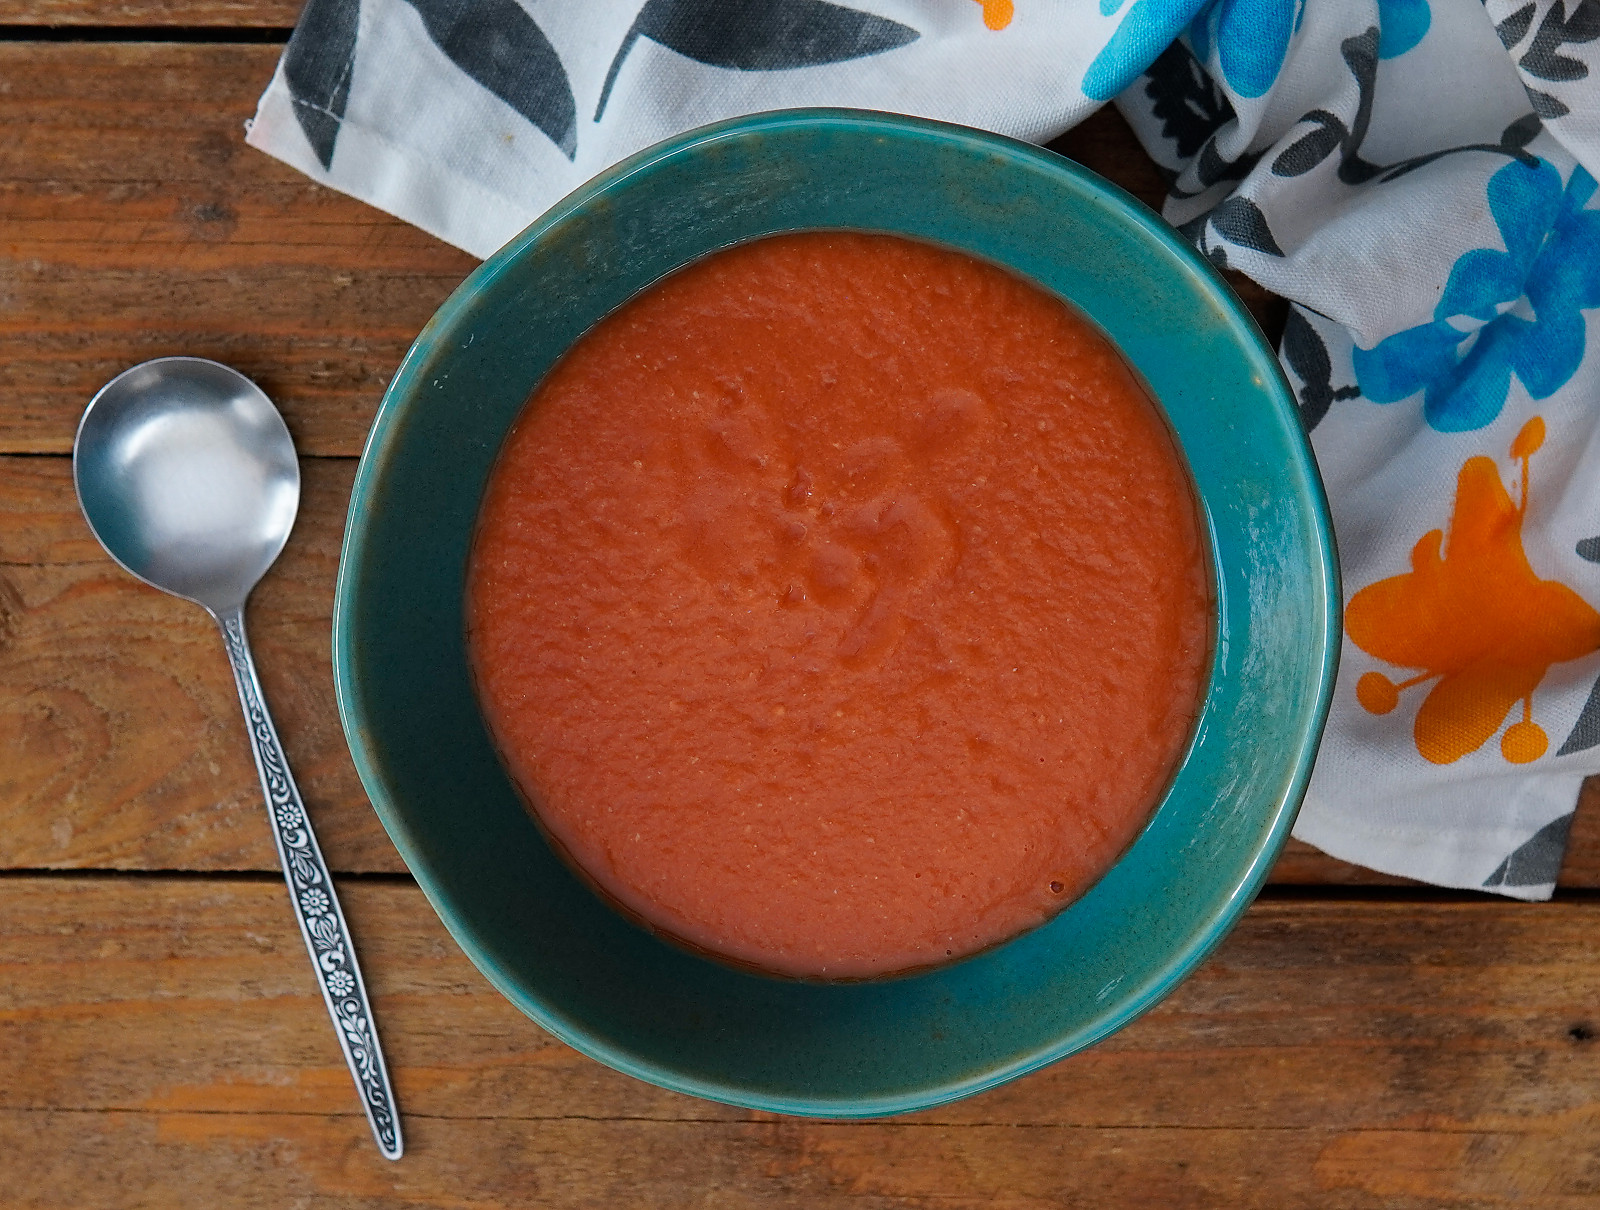 How to make Homemade Tomato Puree Recipe (Sauce)